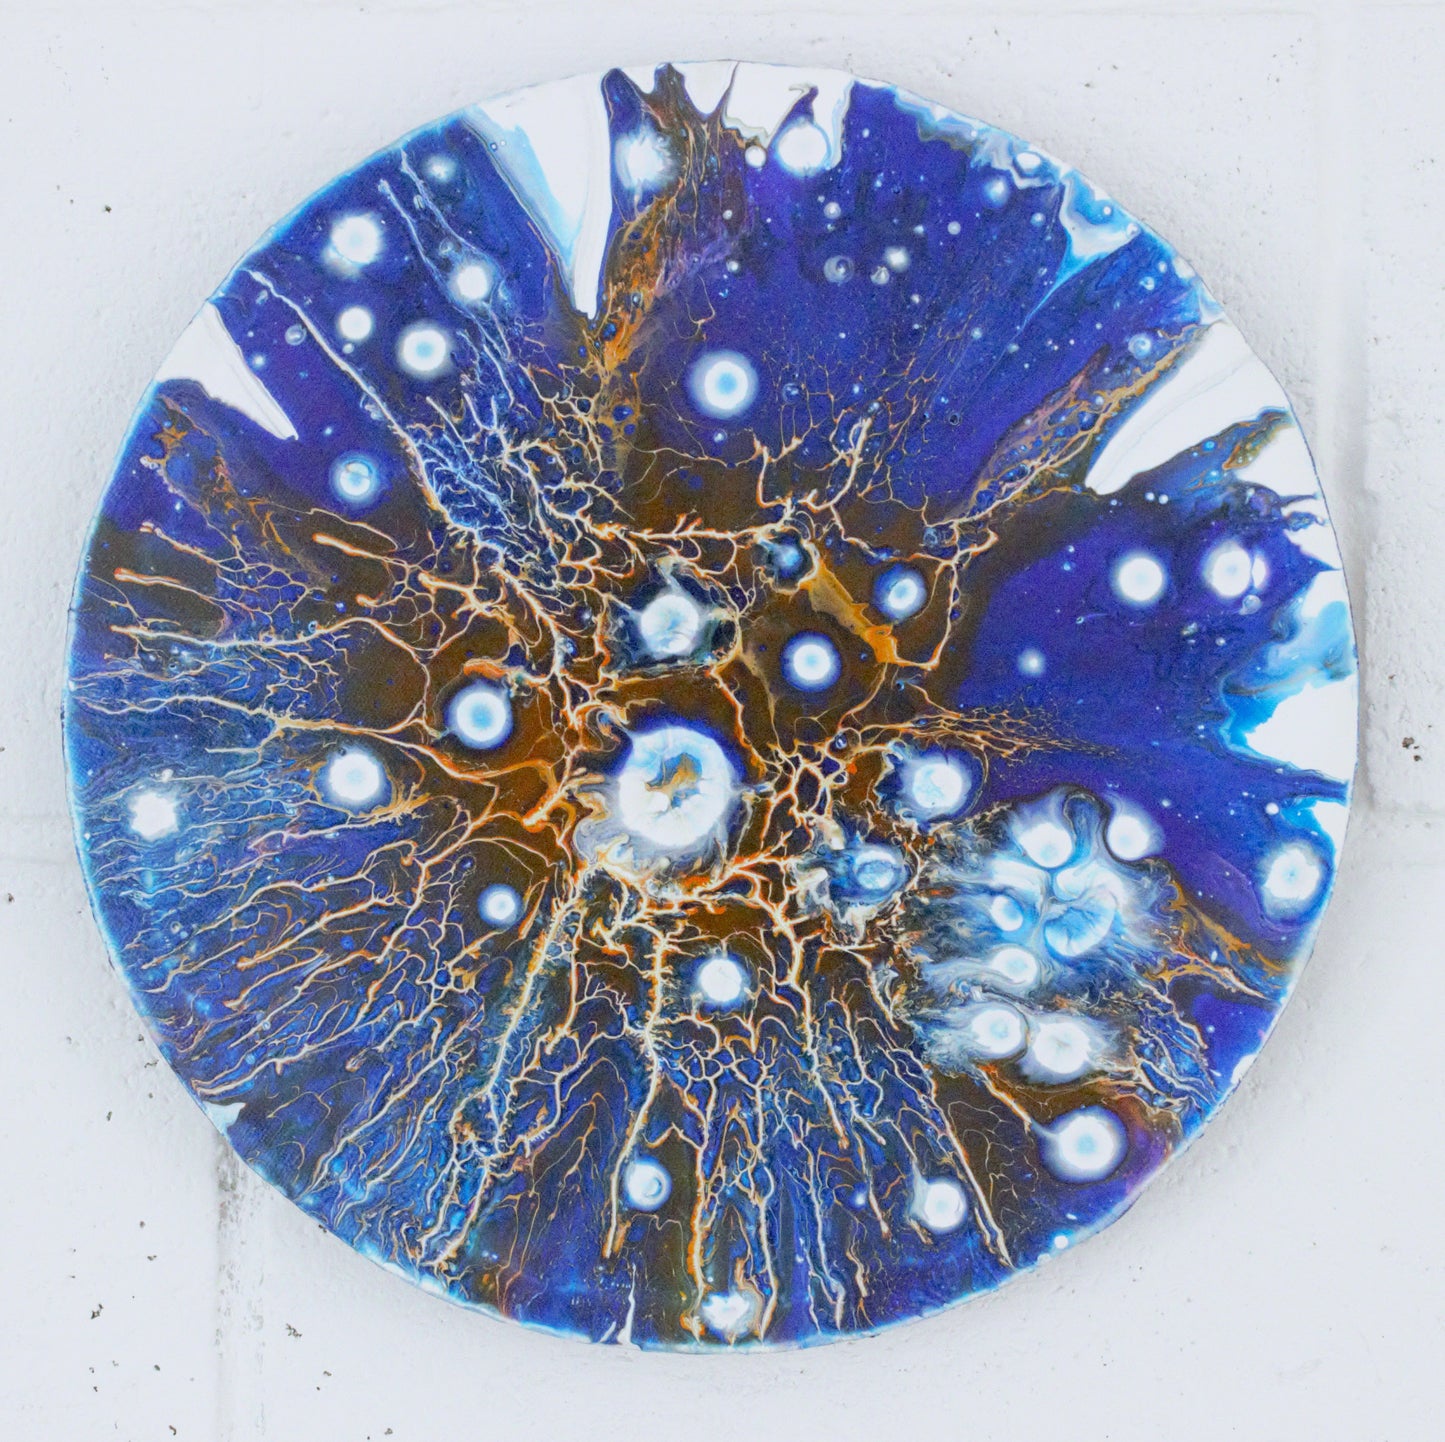 Acrylic on canvas: Nebula